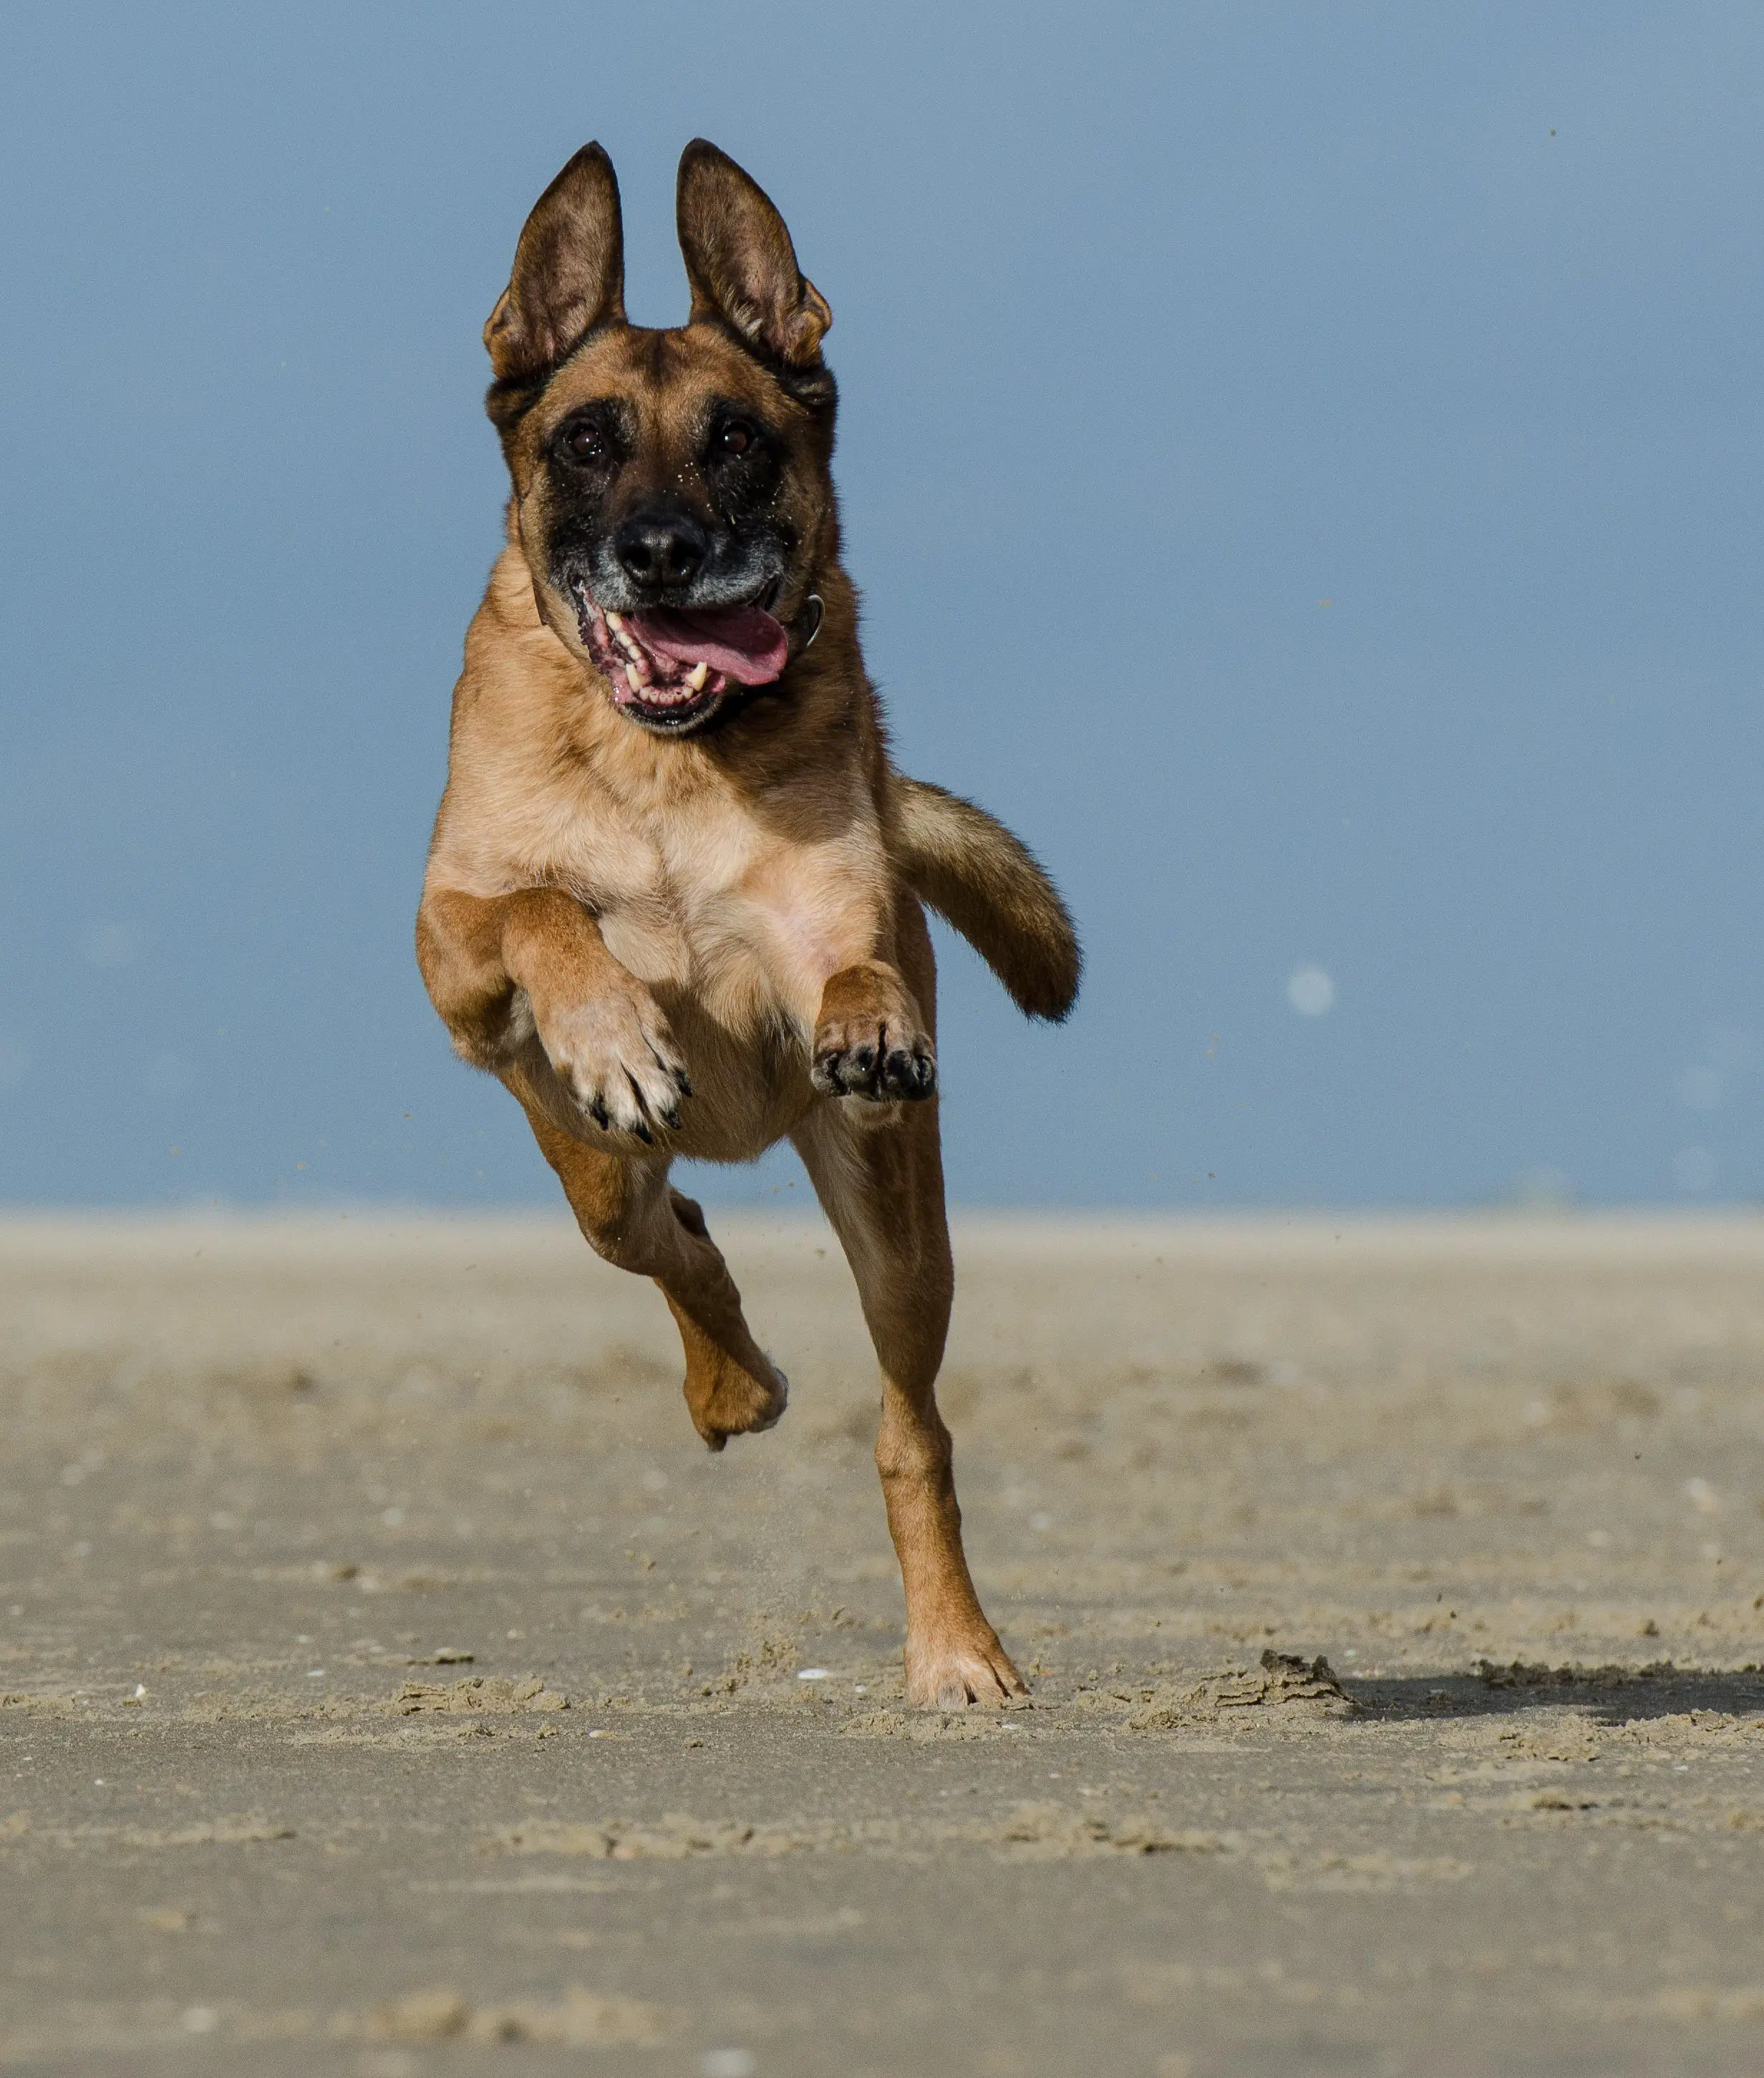 malinois, running dog on the beach, belgian shepherd dog